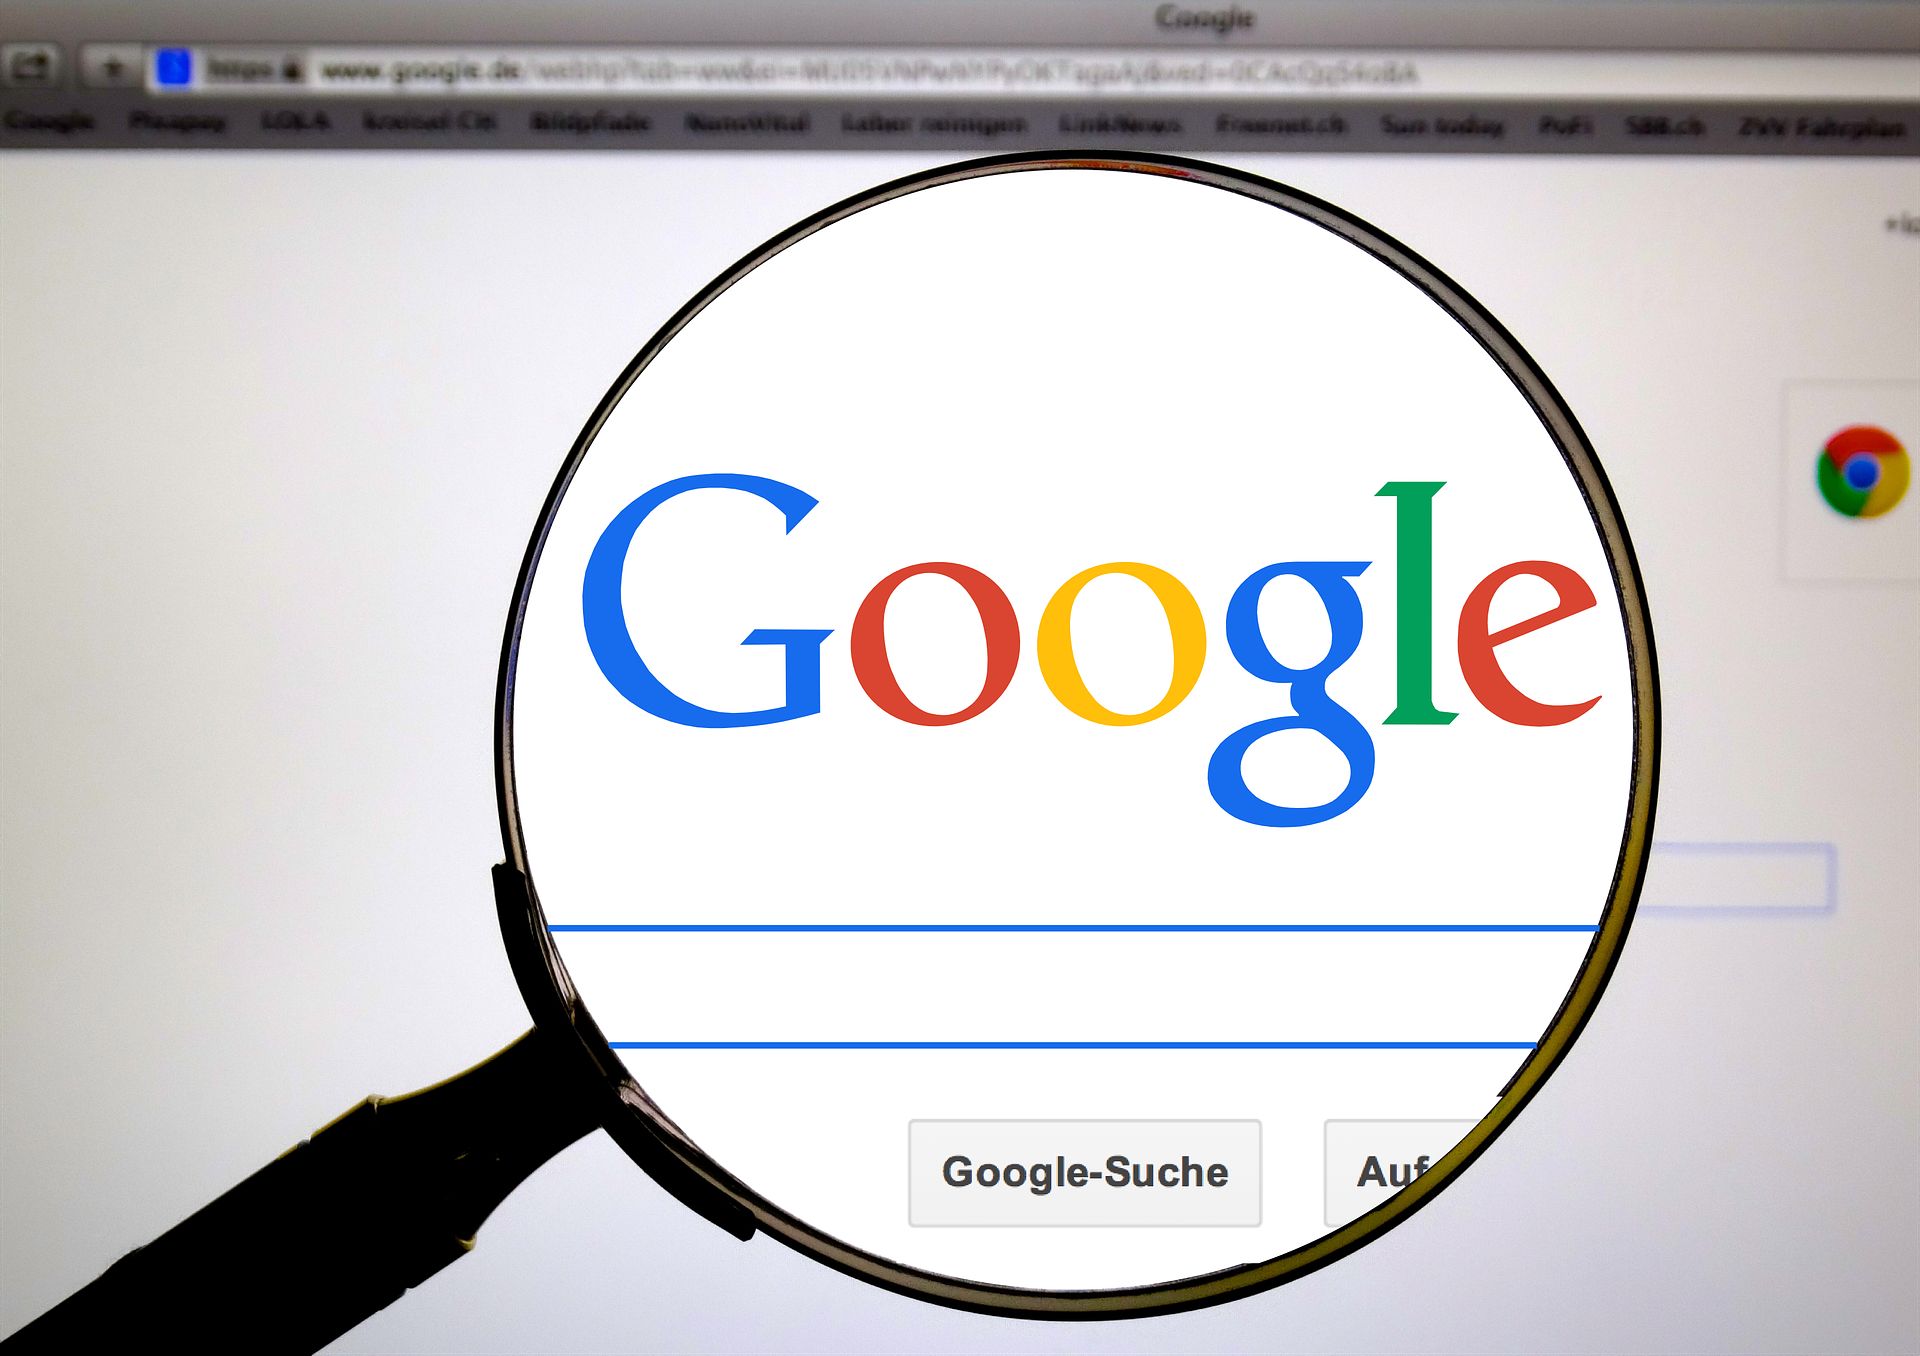 Google e най-използваната търсачка на планетата